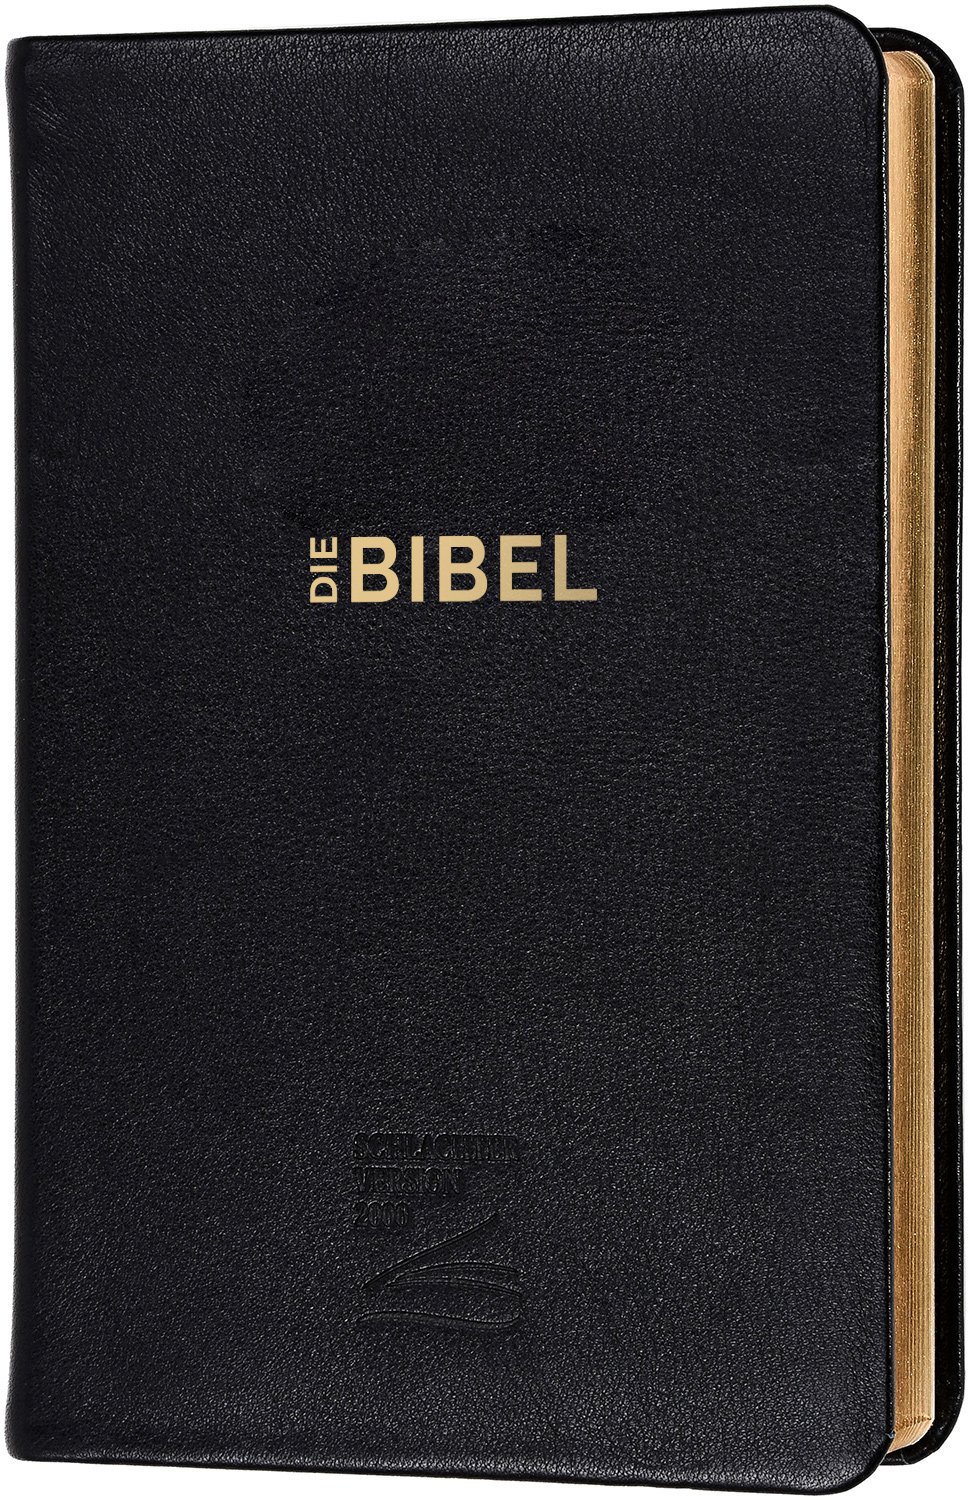 Schlachter 2000 Bibel - Taschenausgabe (Softcover, schwarz, Goldschnitt)